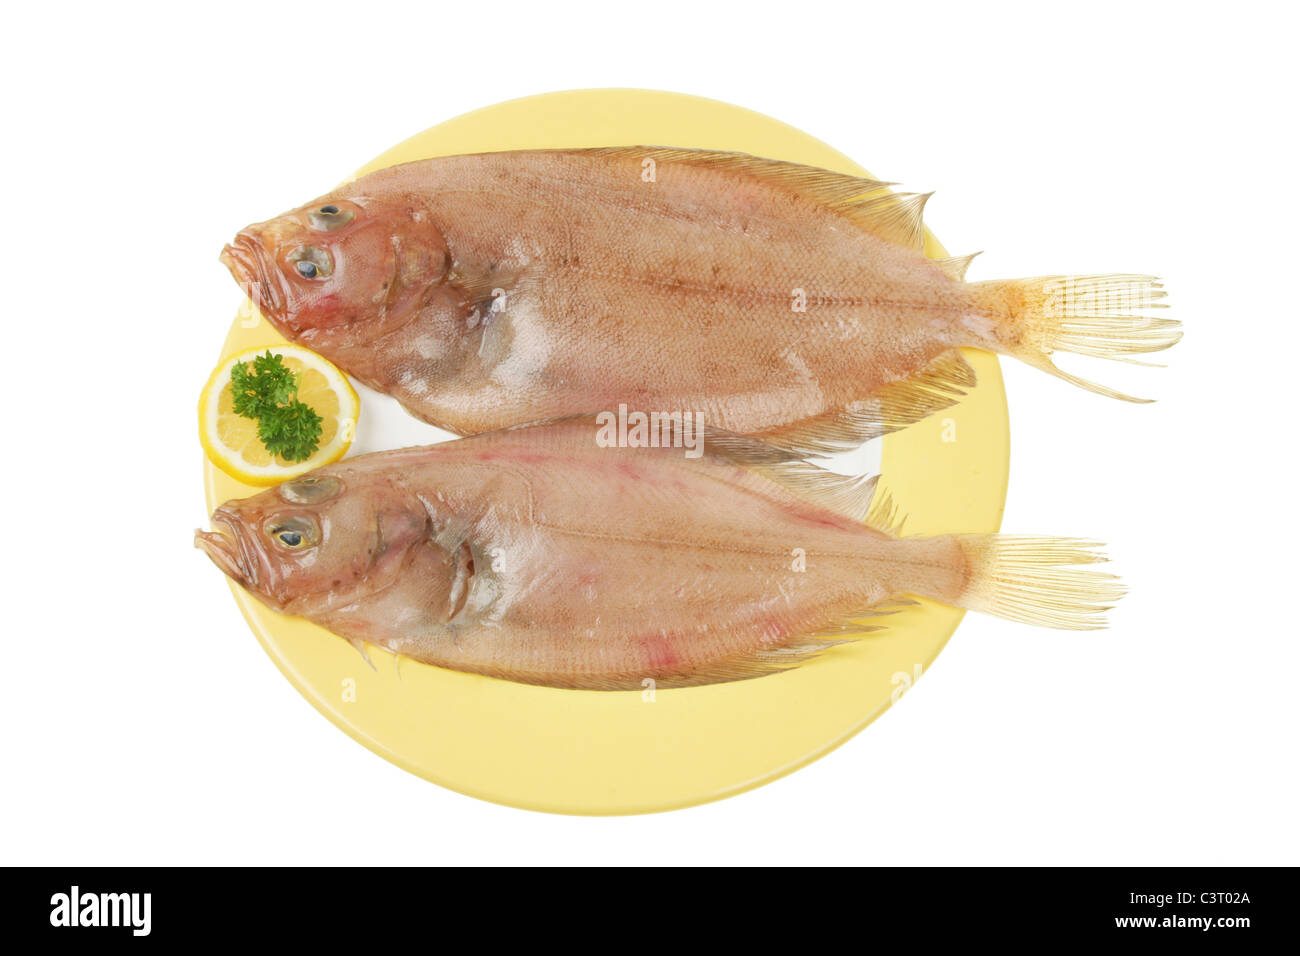 Deux nouvelles cardine seul poisson plat sur une plaque isolated on white Banque D'Images